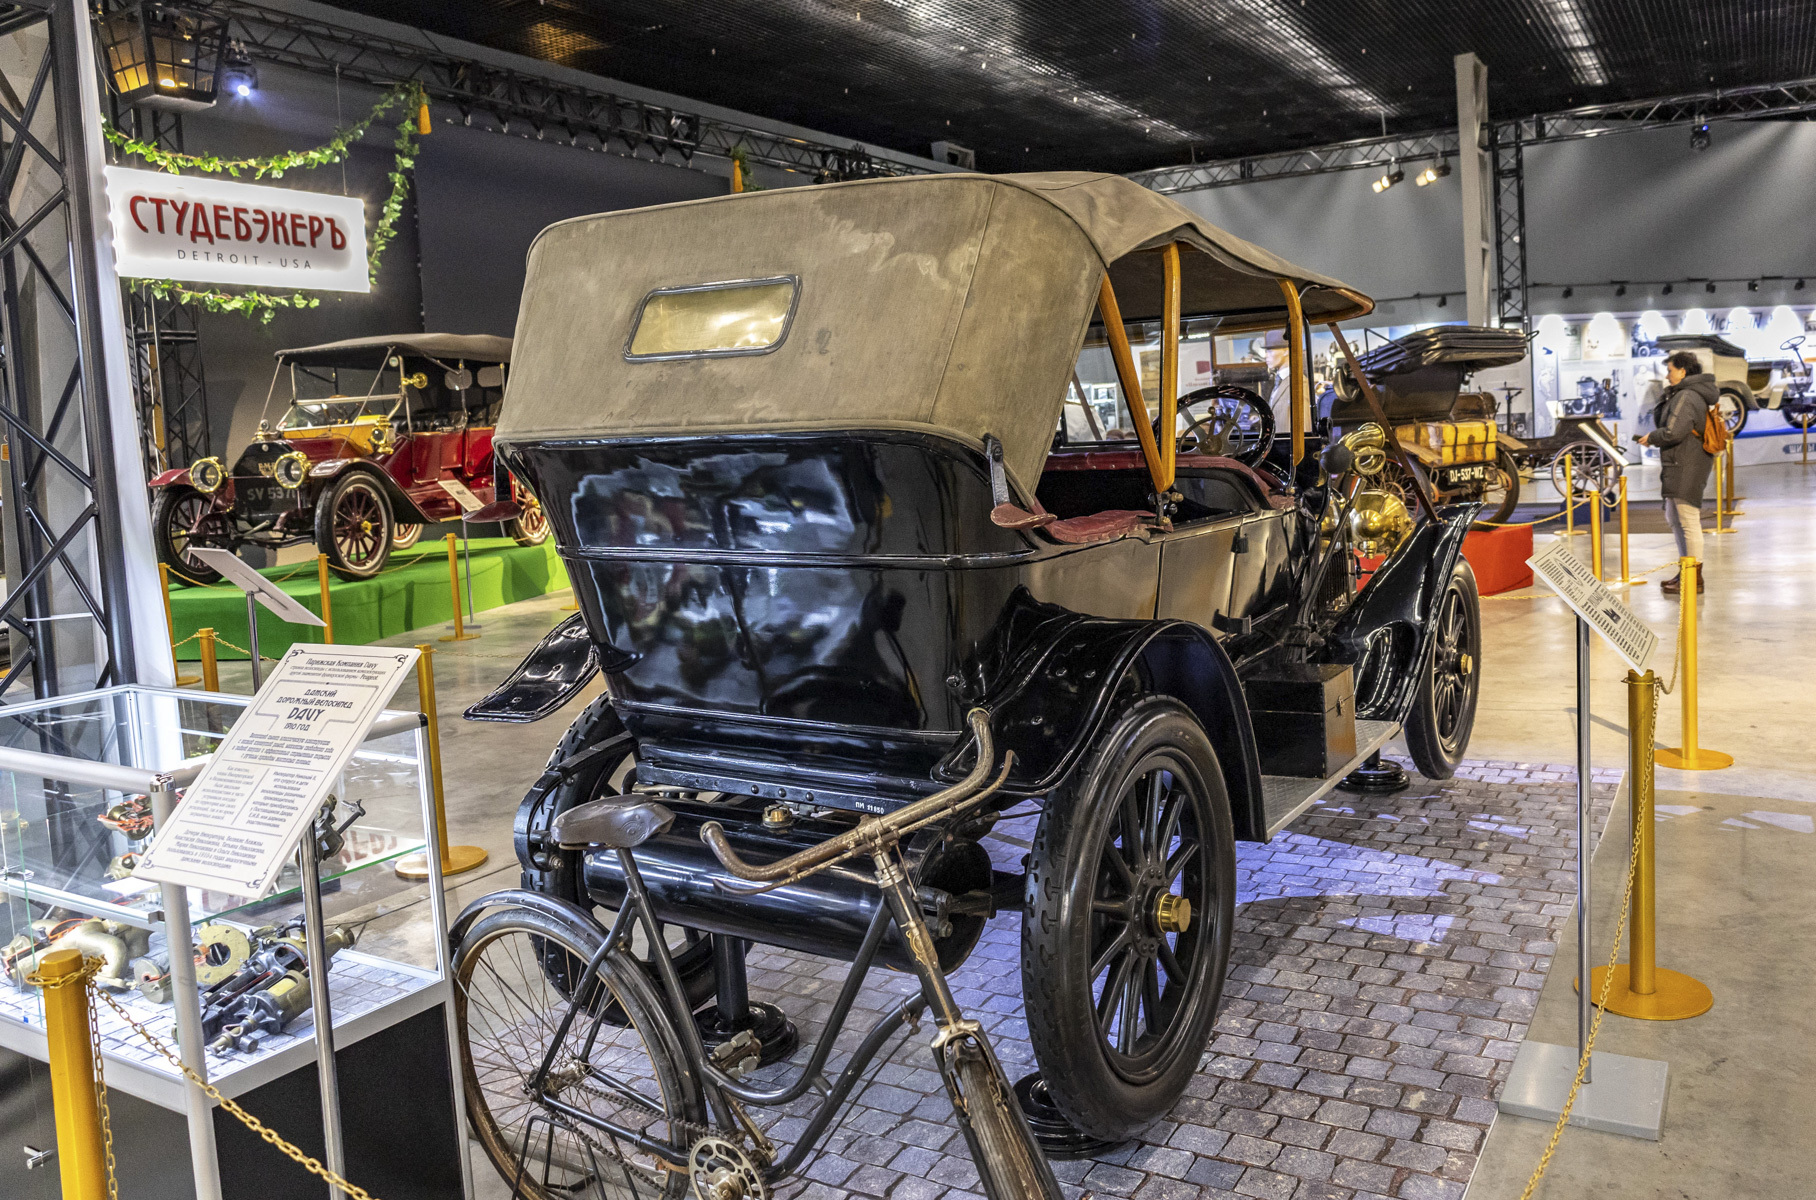 «Руссо-Балт» Тип К представлял собой компактный автомобиль с двигателем небольшой мощности. За все время производства модели она составляла от 16 до 24 лошадиных сил.